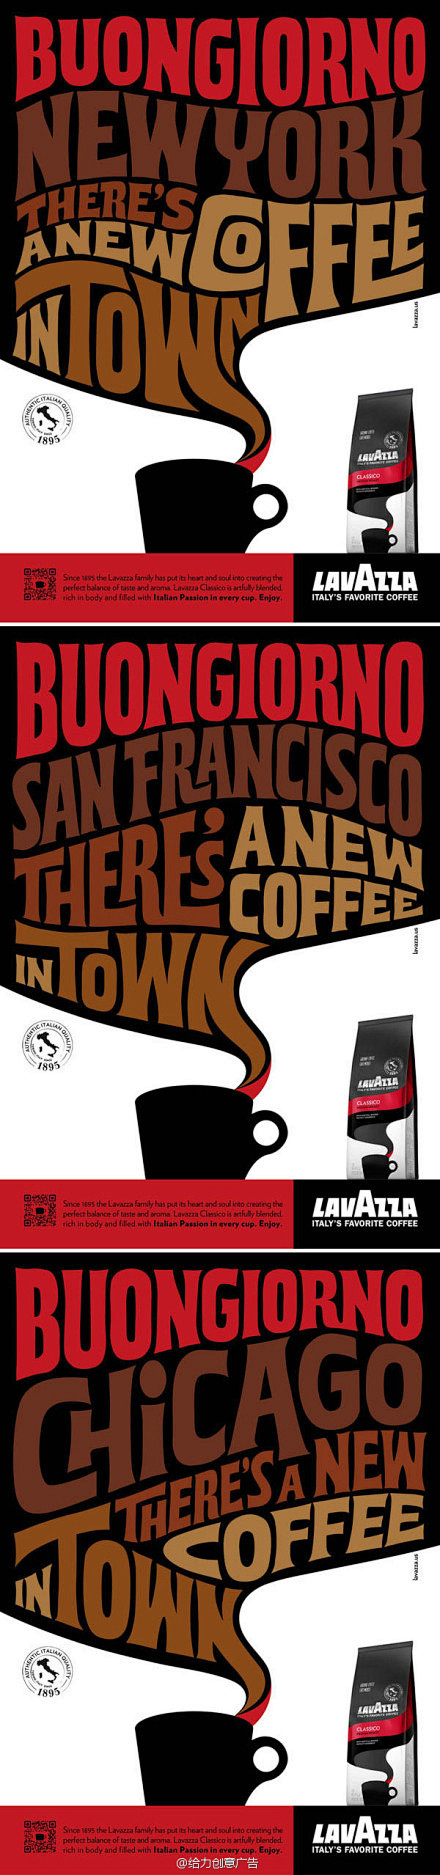 意大利Lavazza咖啡字体创意广告
